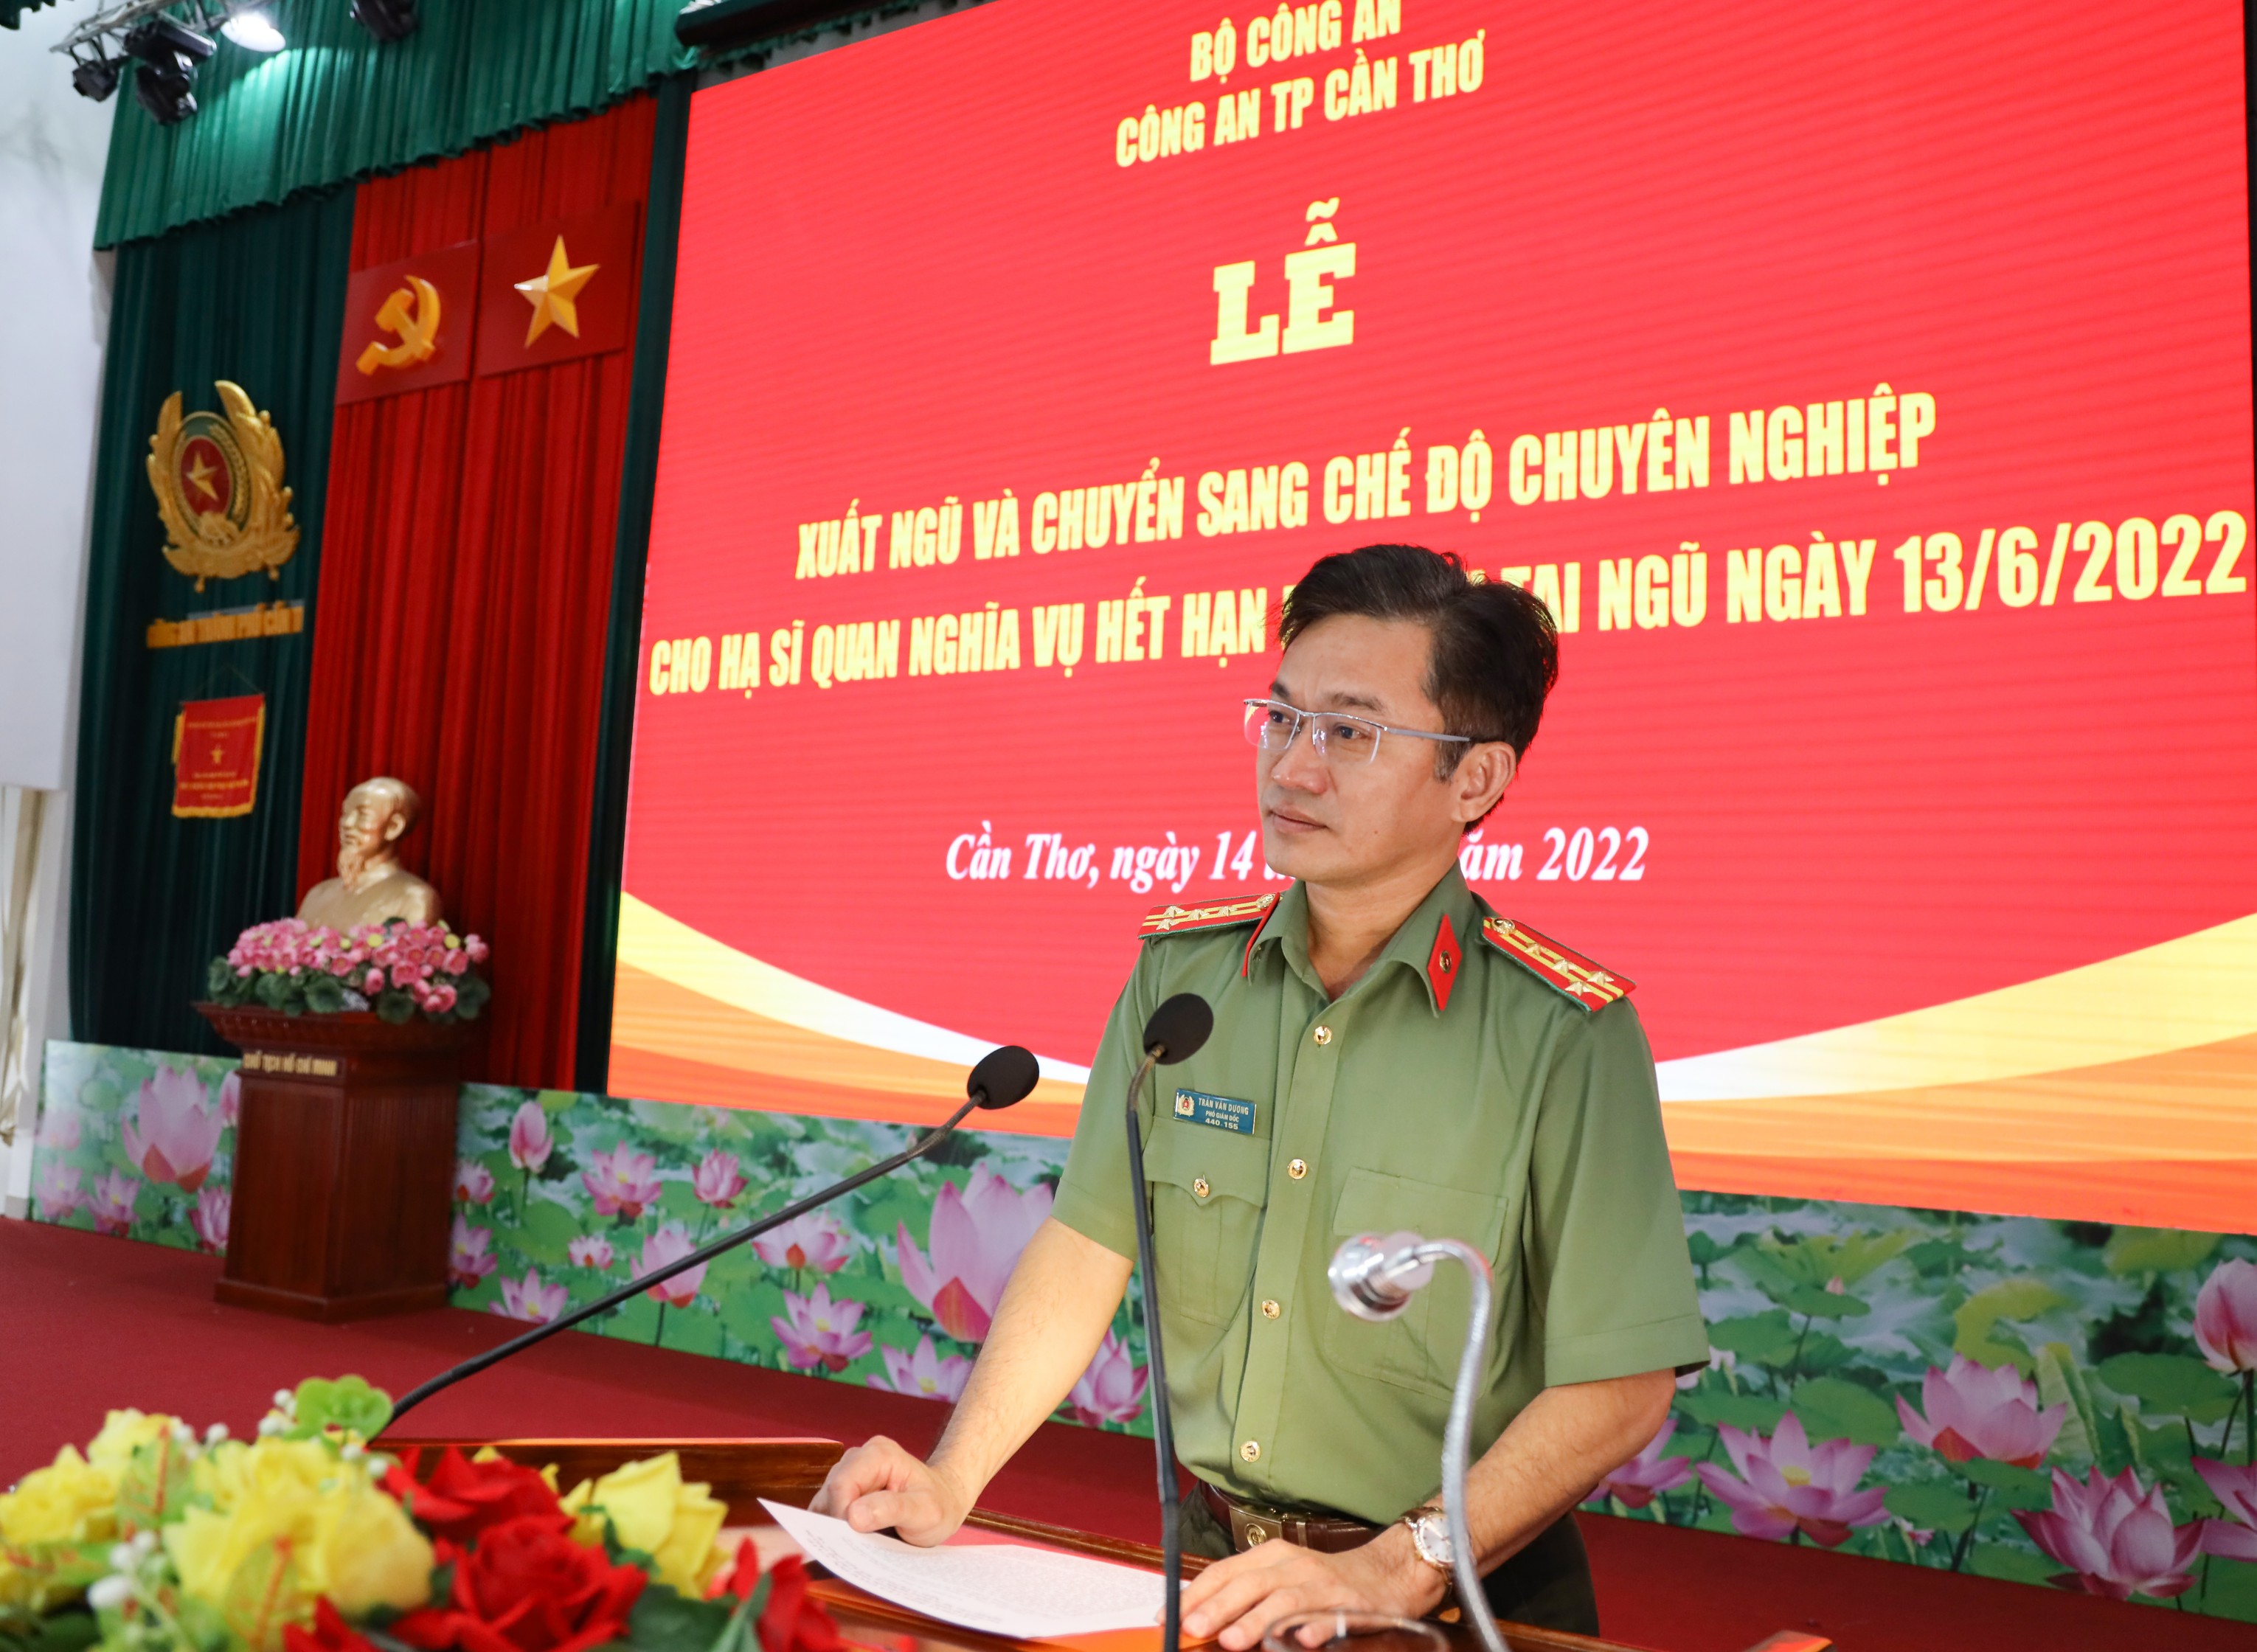 Đại tá Trần Văn Dương - Phó Giám đốc Công an TP. Cần Thơ phát biểu chỉ đạo tại buổi lễ.